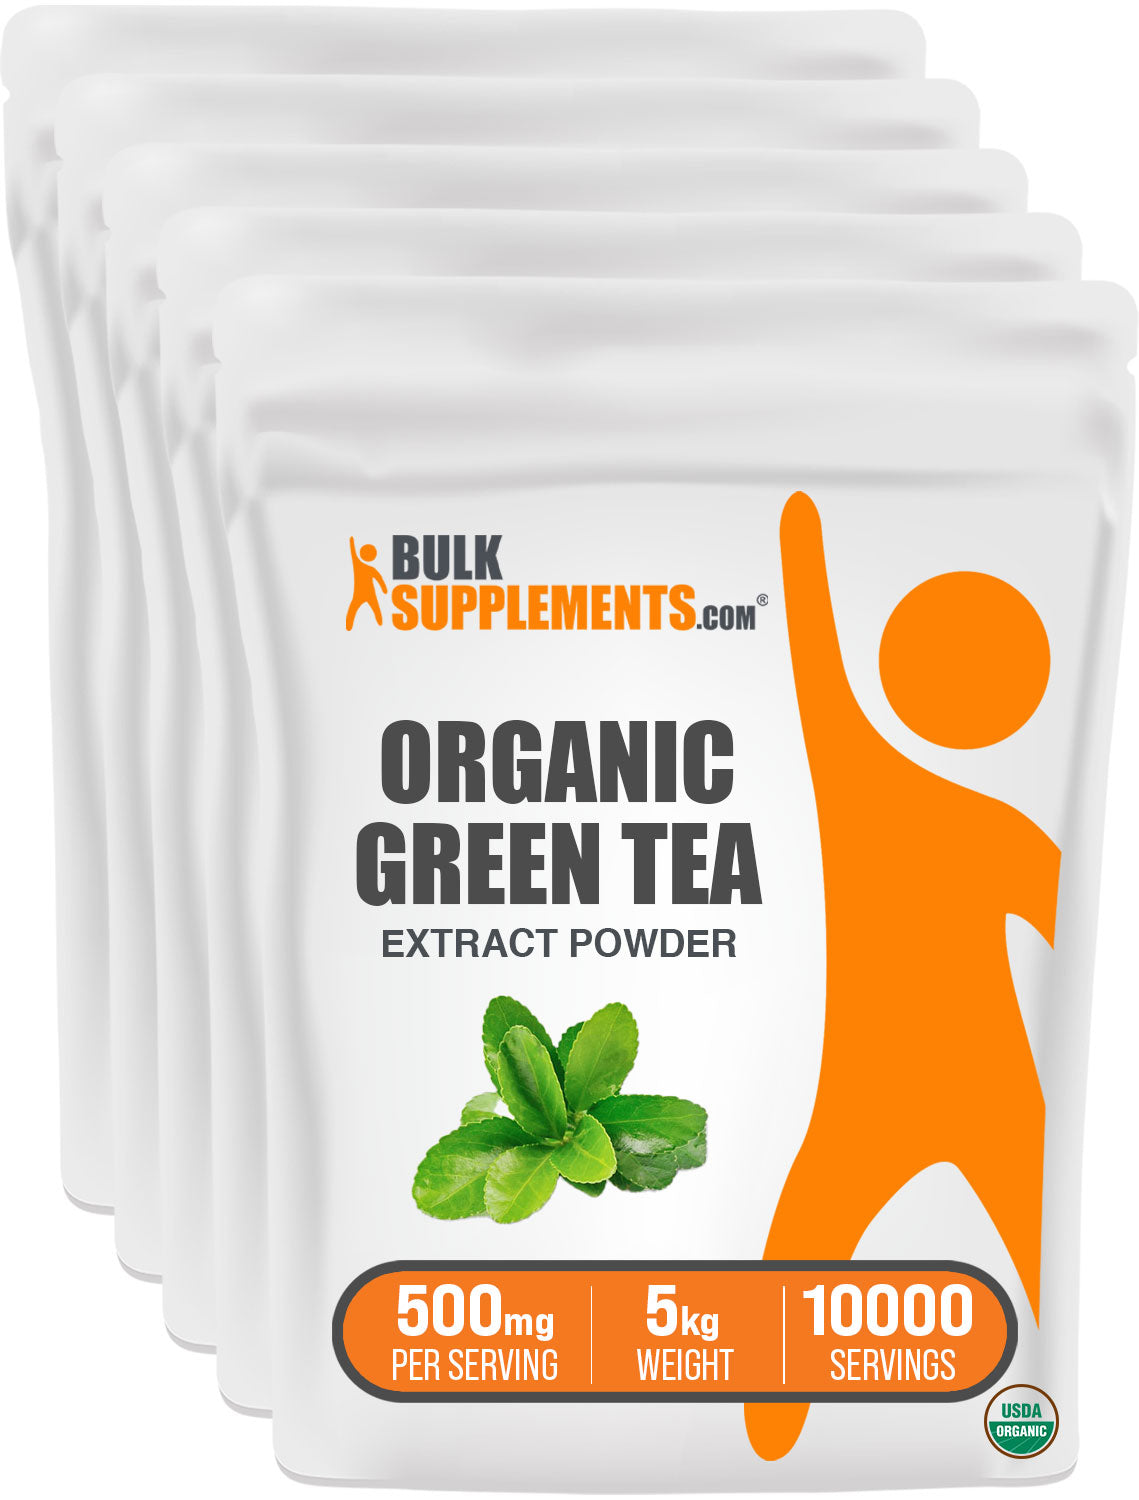 BulkSupplements.com Organic green tea extract powder 5kg bag